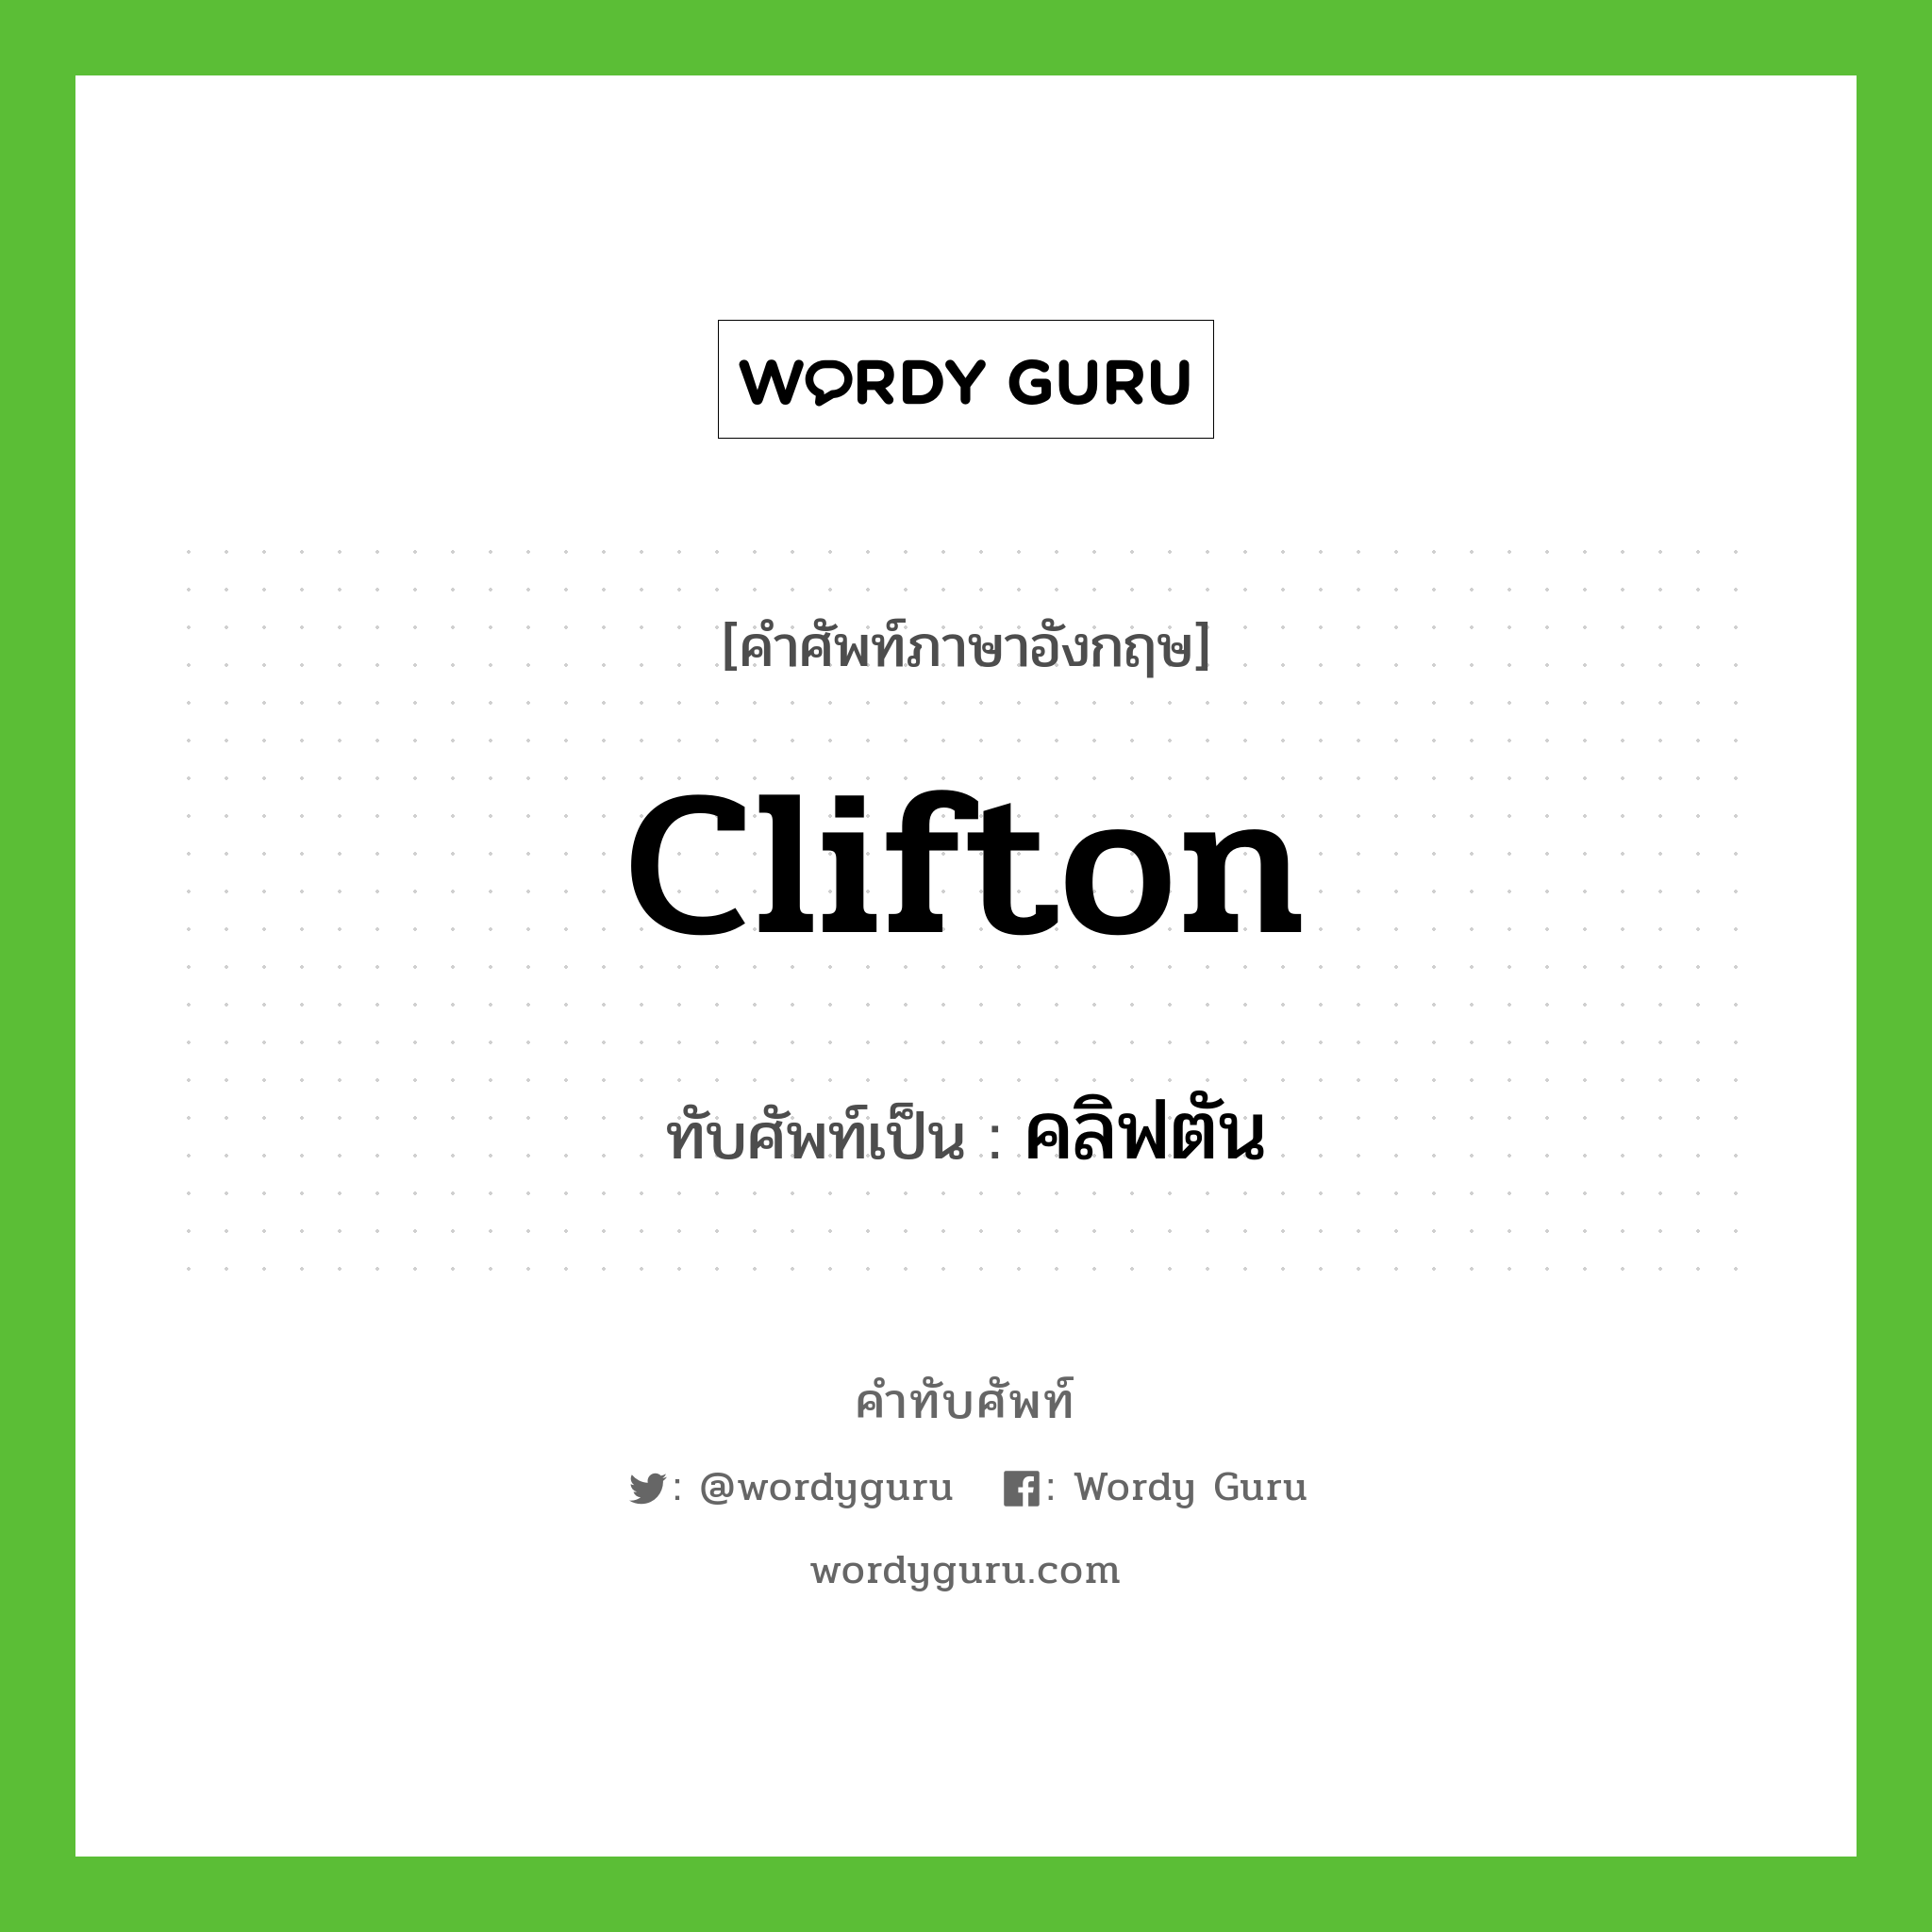 Clifton เขียนเป็นคำไทยว่าอะไร?, คำศัพท์ภาษาอังกฤษ Clifton ทับศัพท์เป็น คลิฟตัน